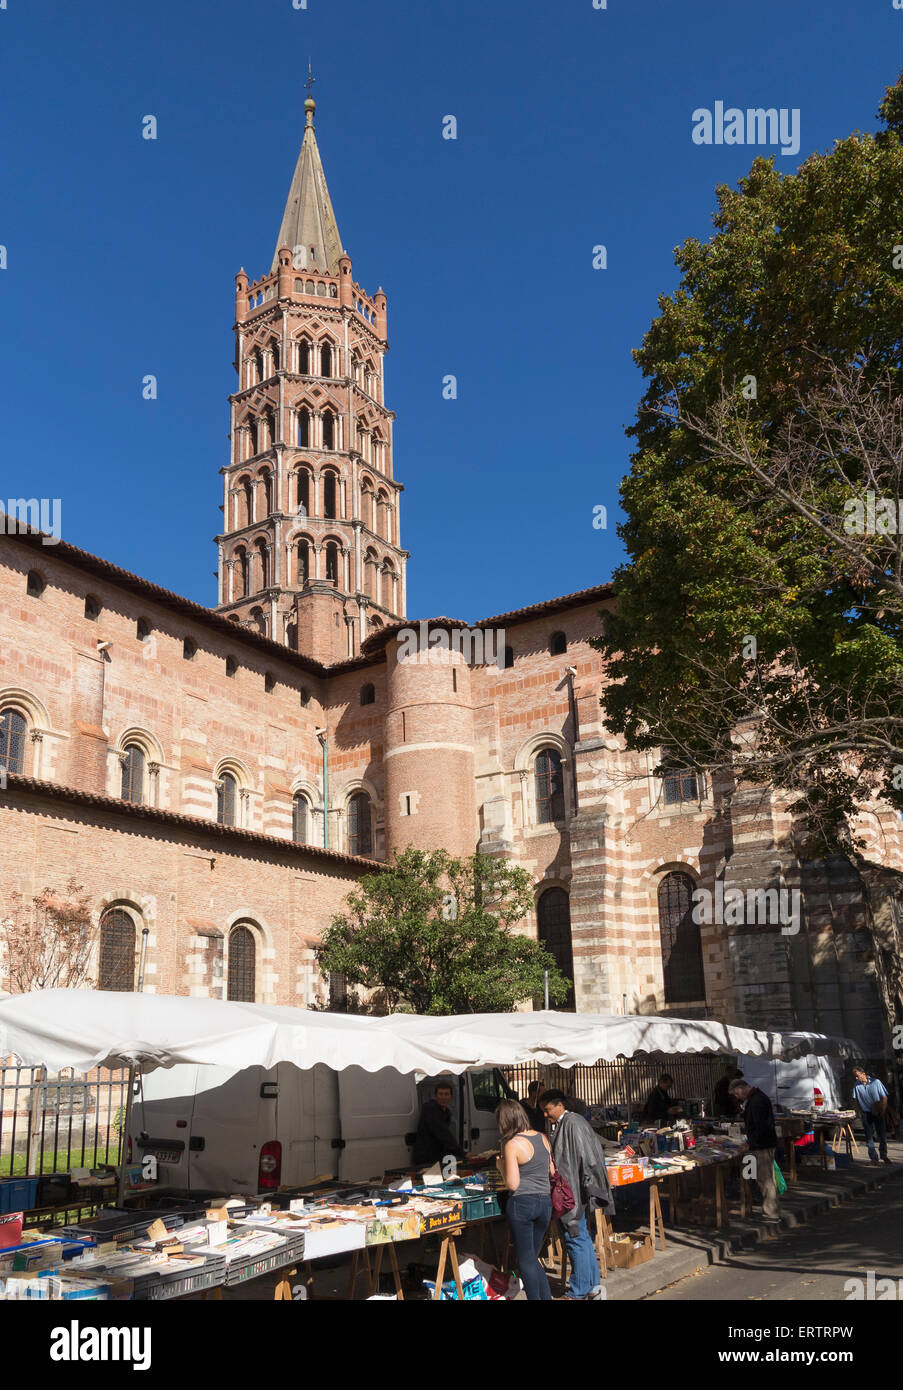 Il mercato di domenica al di fuori della basilica di Saint Sernin chiesa romanica a Tolosa, in Francia, in Europa Foto Stock